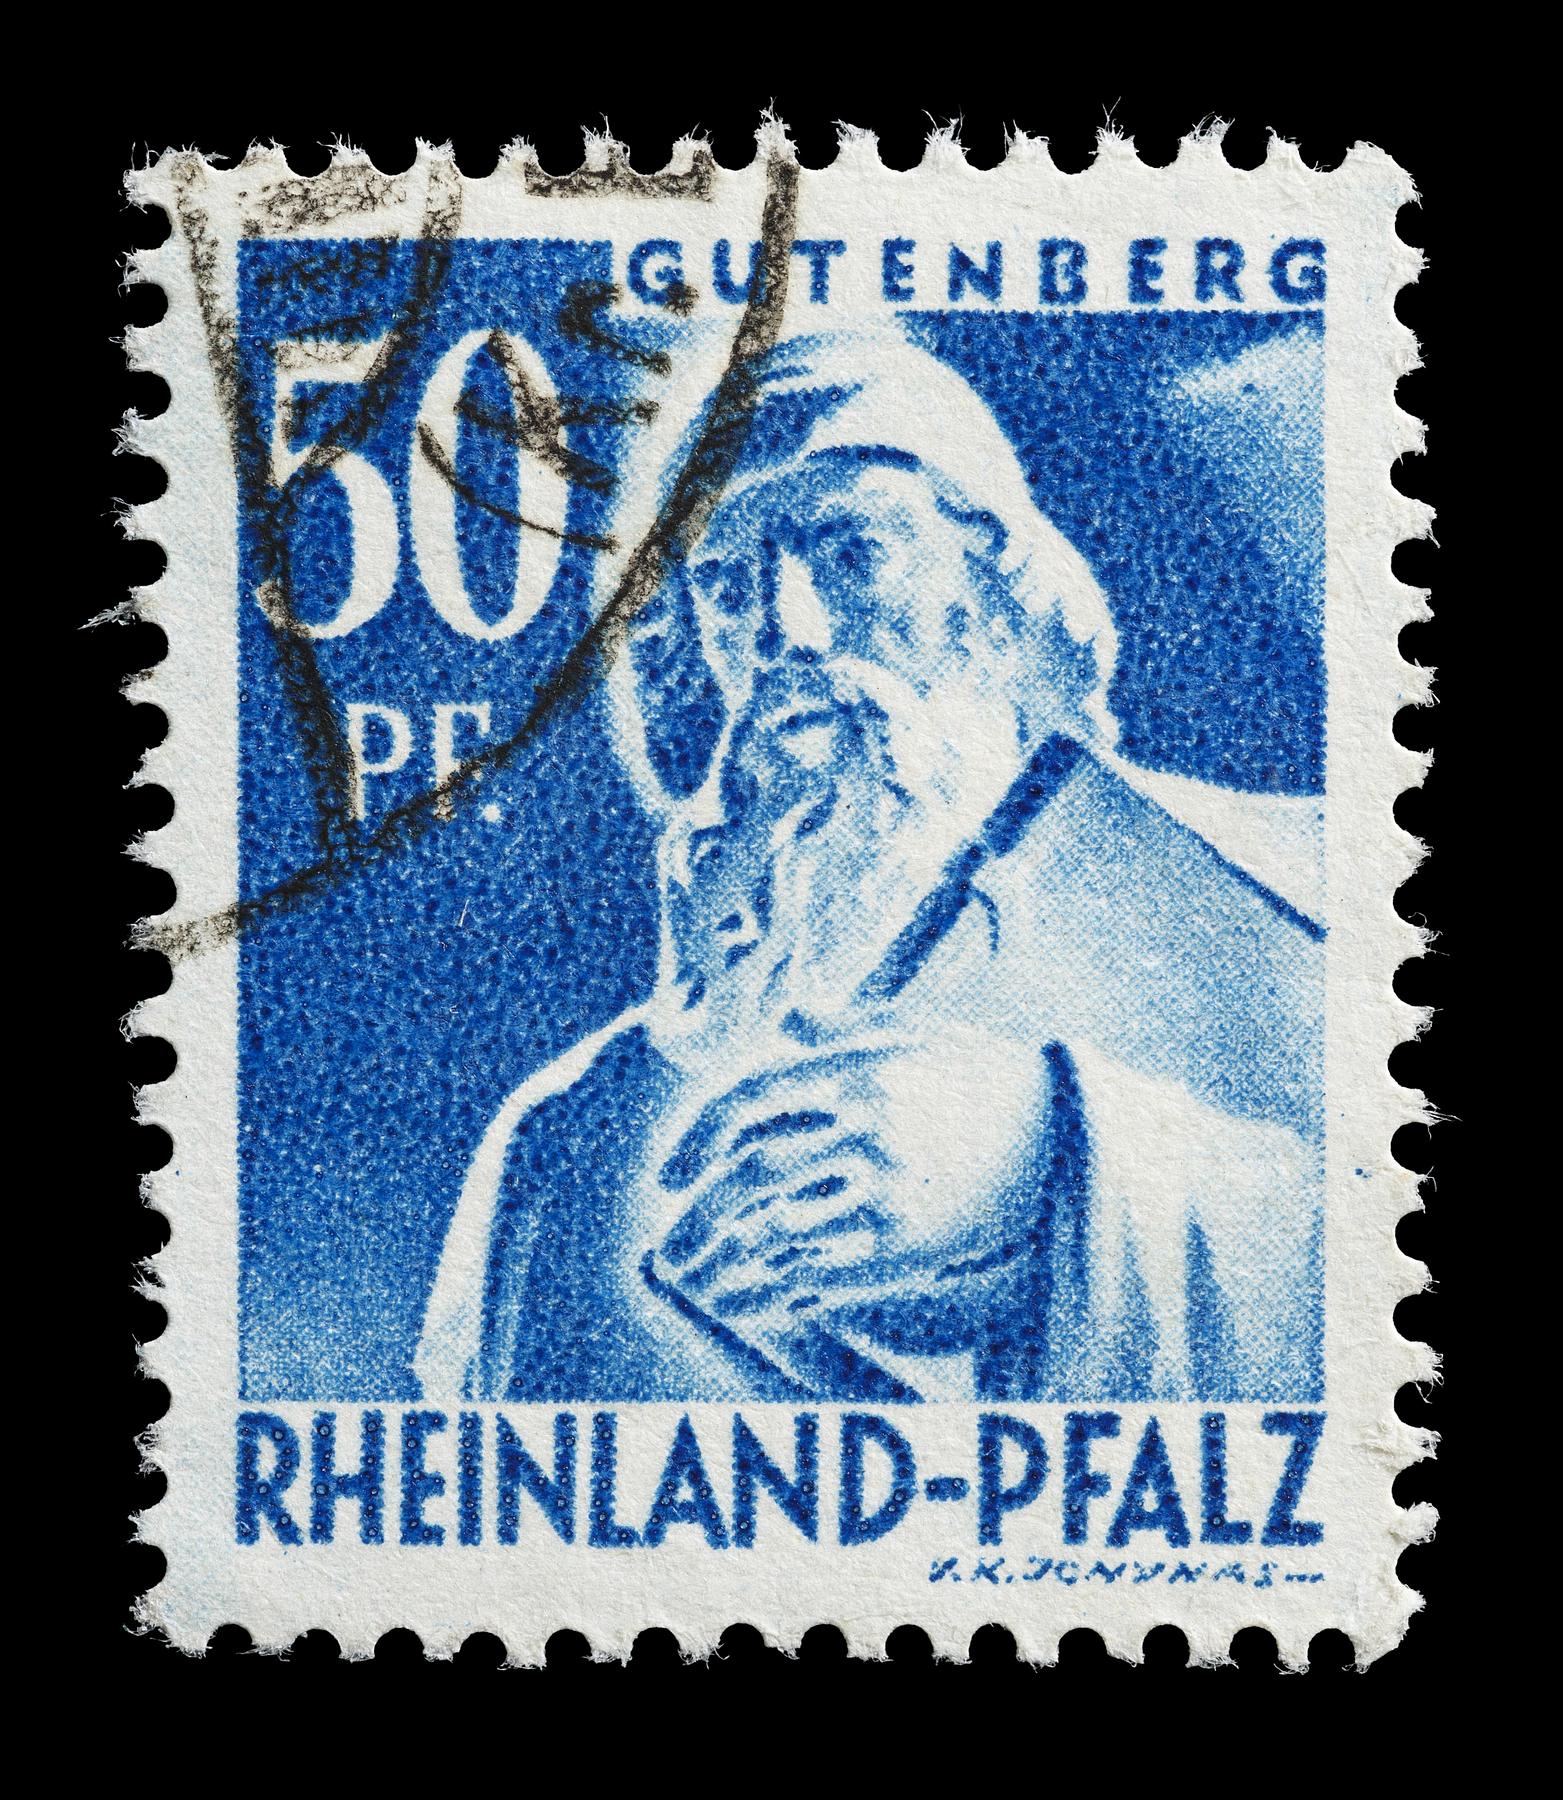 Frimærke udgivet i den franske besættelseszone, Rheinland-Pfalz med Thorvaldsens statue af Johann Gutenberg, E2361